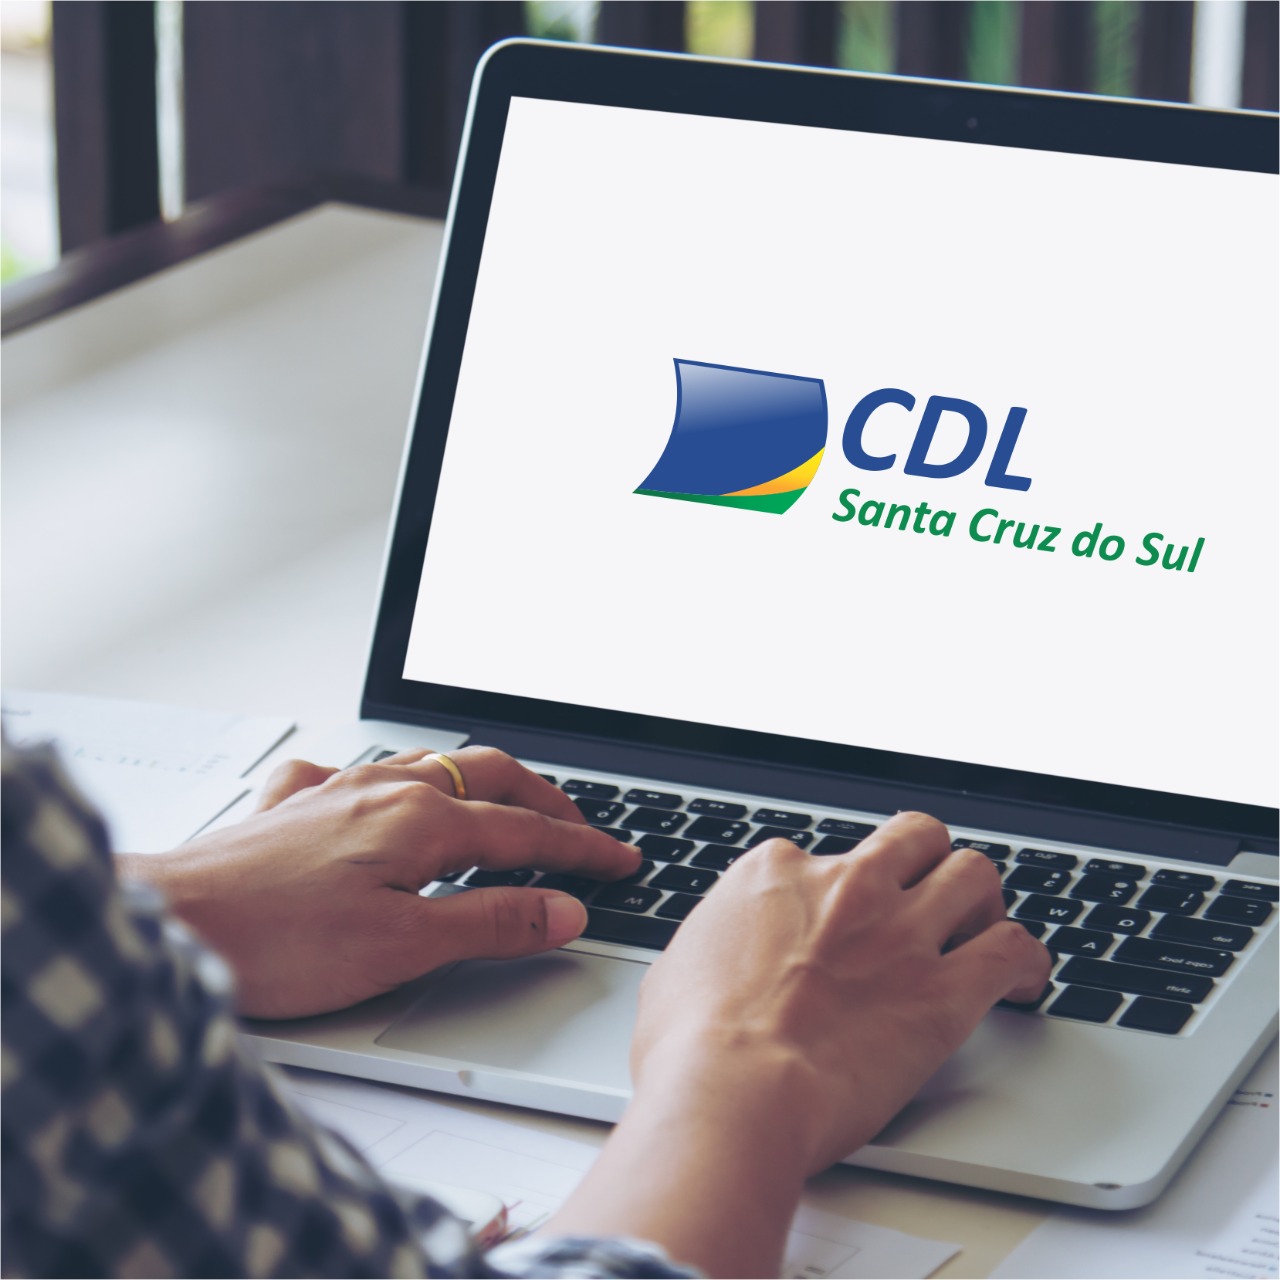 Renovação online do Certificado Digital - FCDL-RS - Federação das